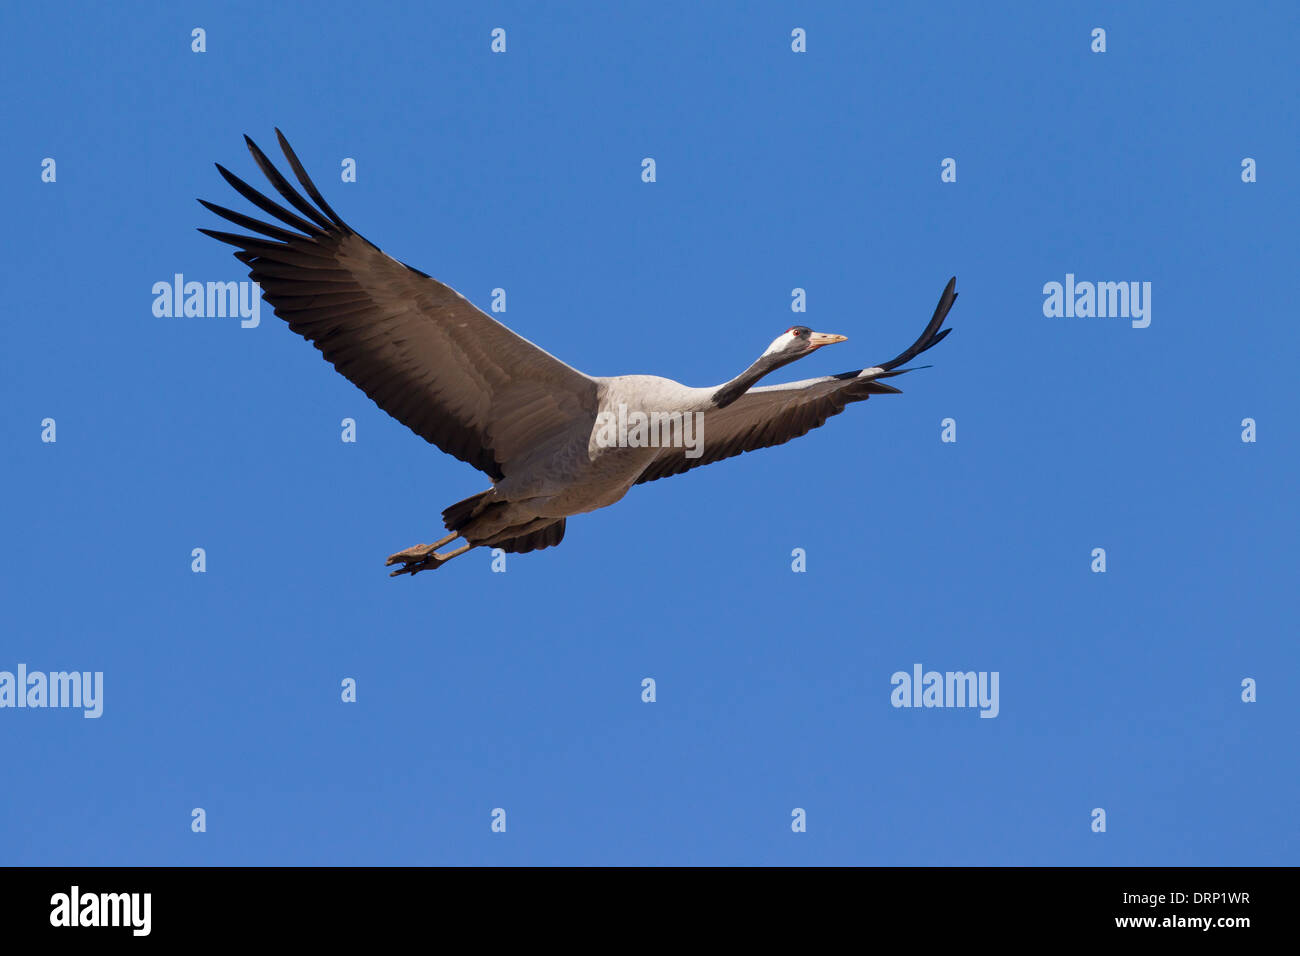 Common Crane / Eurasian Crane (Grus grus) flying against blue sky Stock Photo